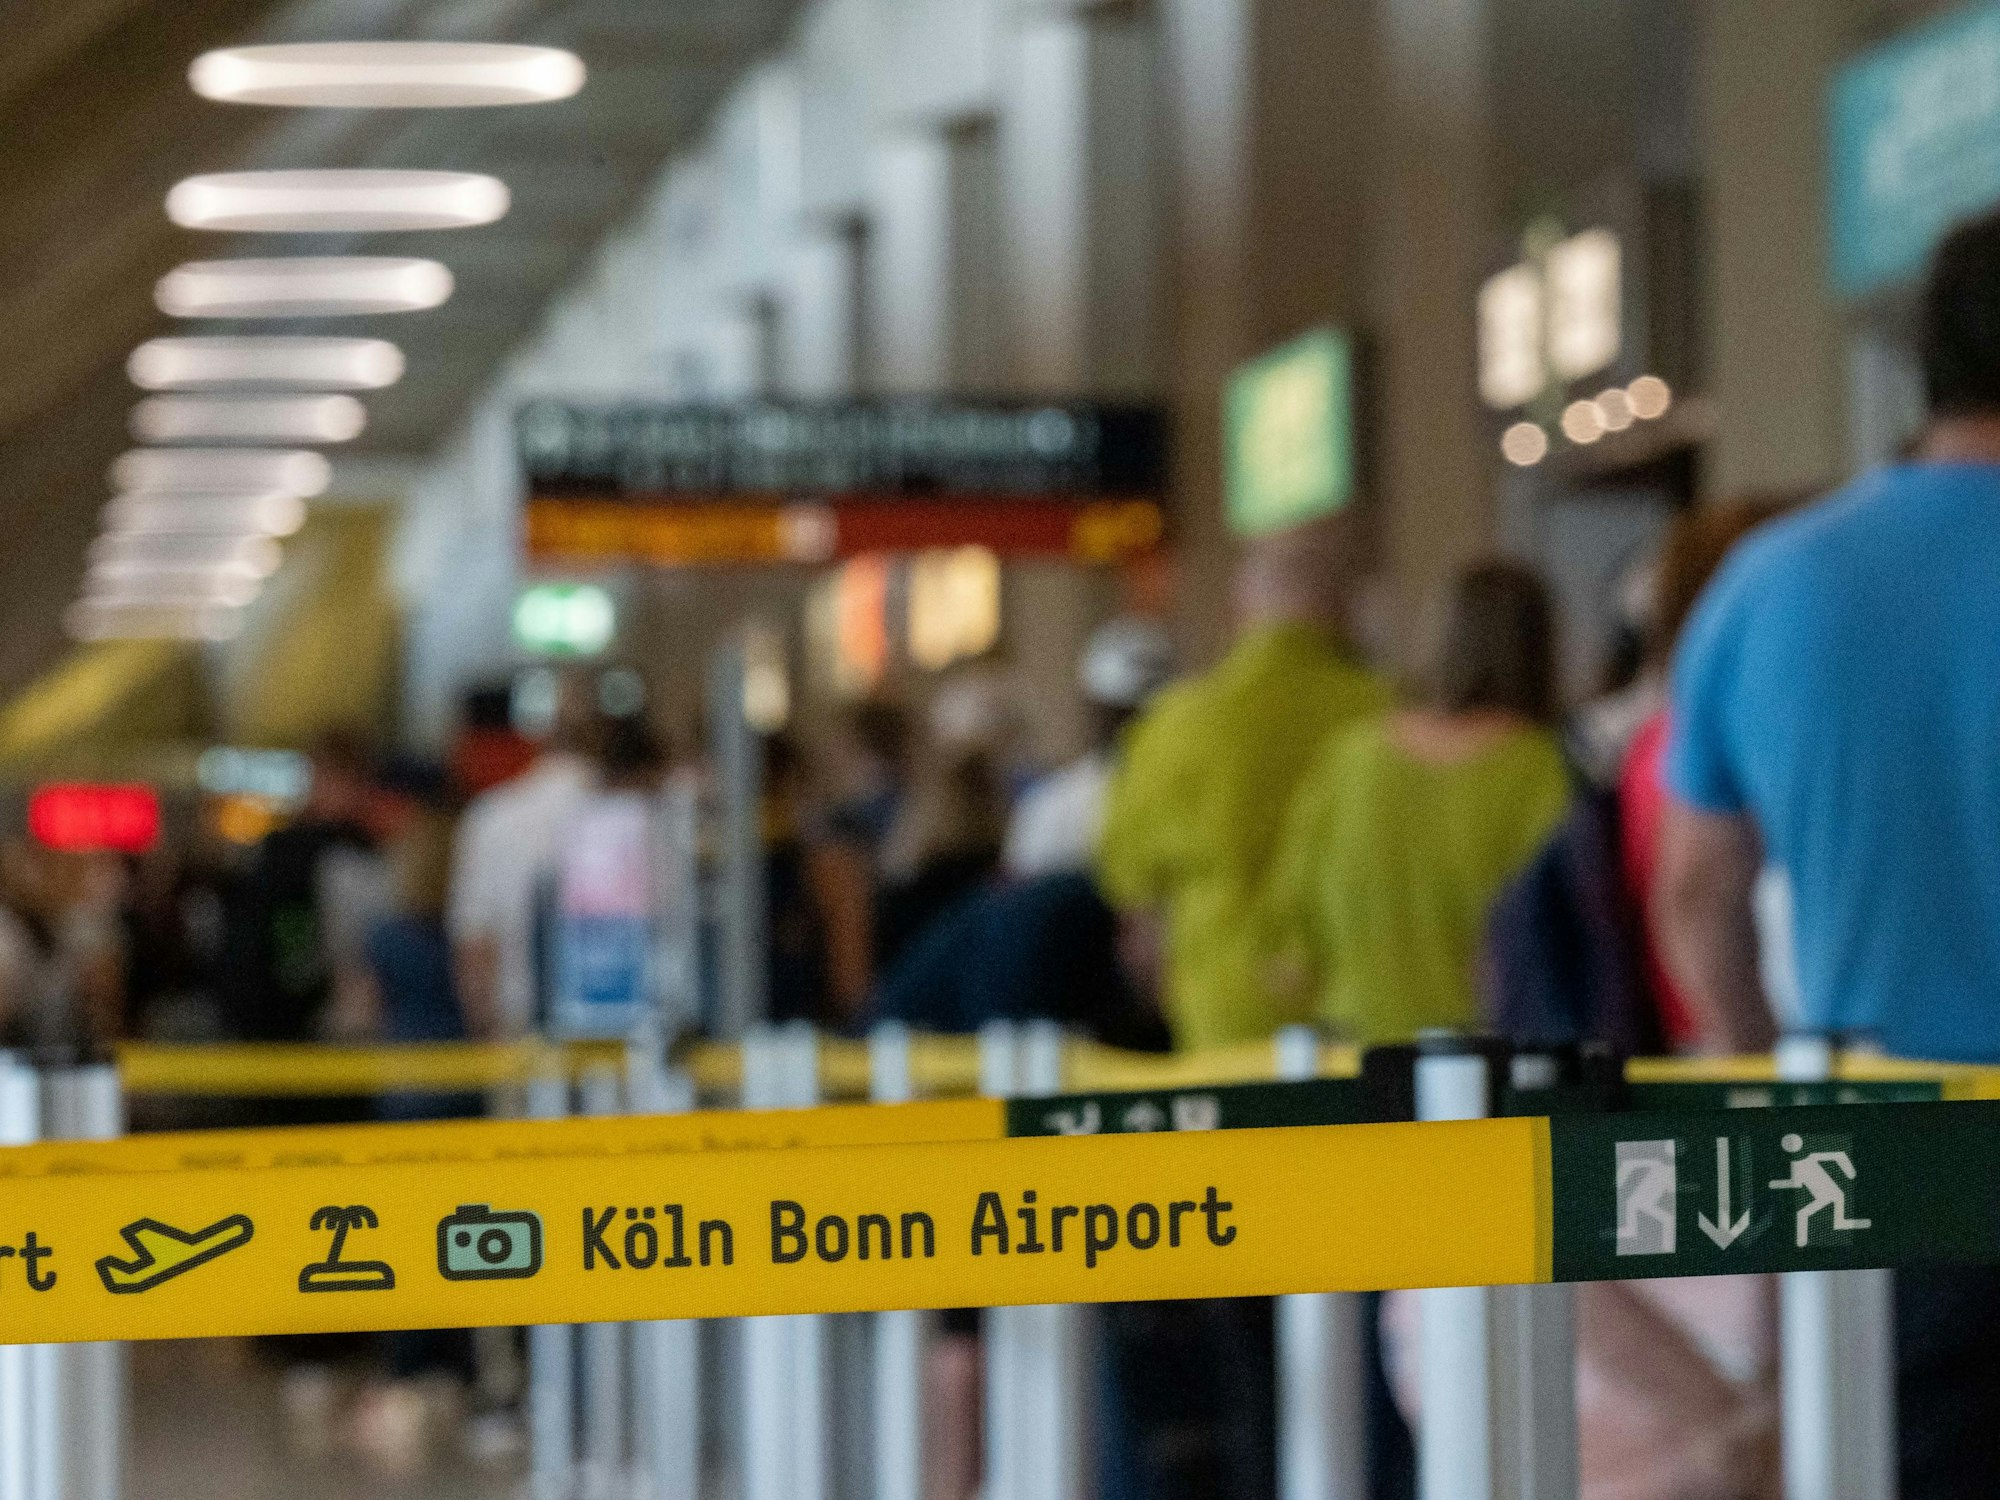 Am Flughafen Köln-Bonn haben sich extrem lange Warteschlangen von Fluggästen gebildet, weil nicht genug Sicherheitspersonal für den security check vor den Gates vorhanden ist.